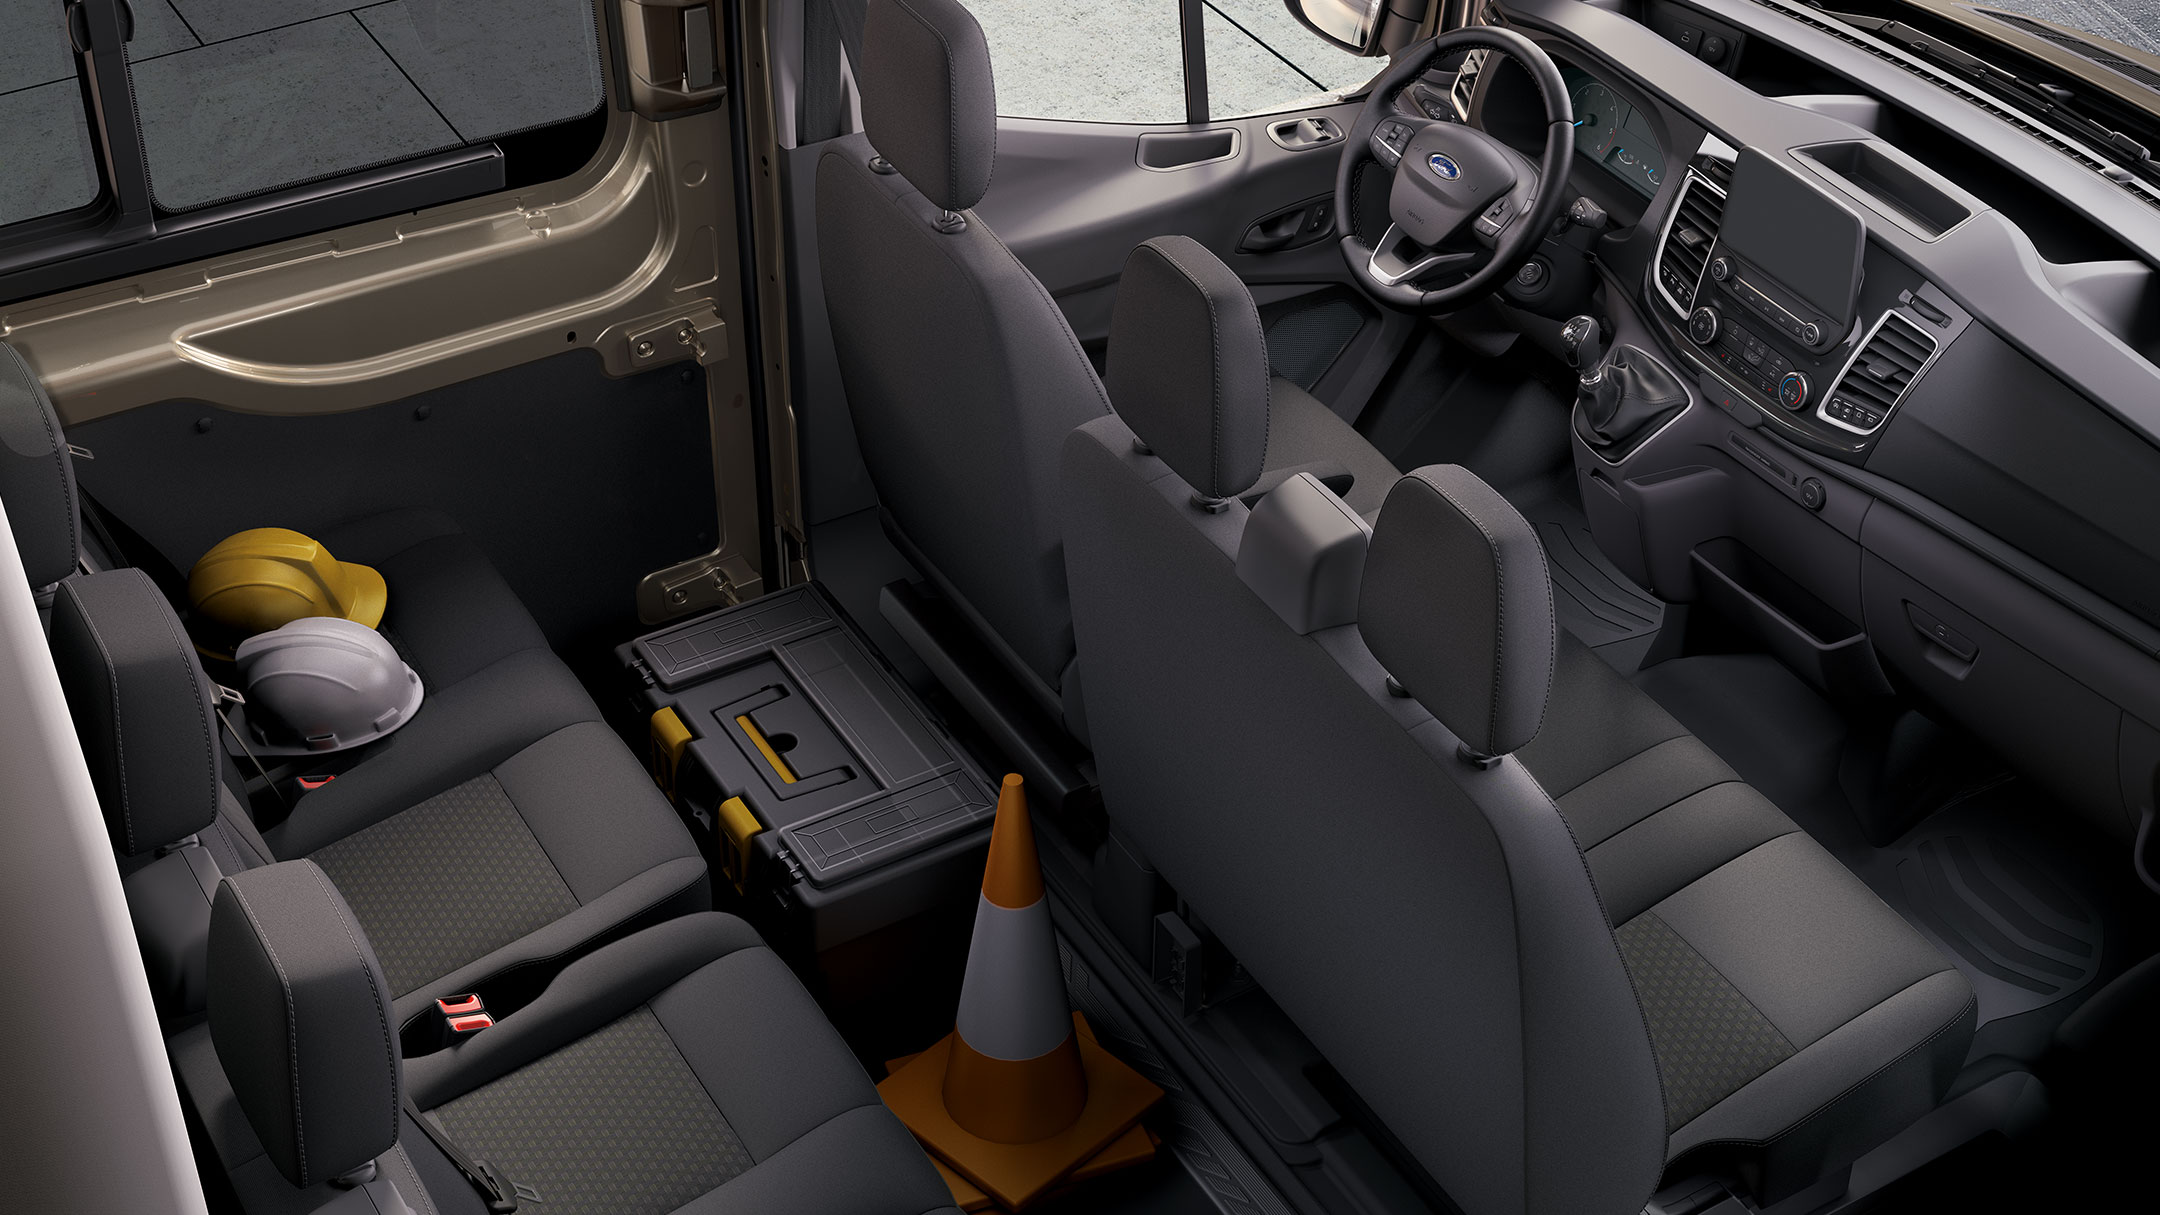 Ford Transit Doppelkabine Innenraum. Detailansicht der Sitzreihen von oben